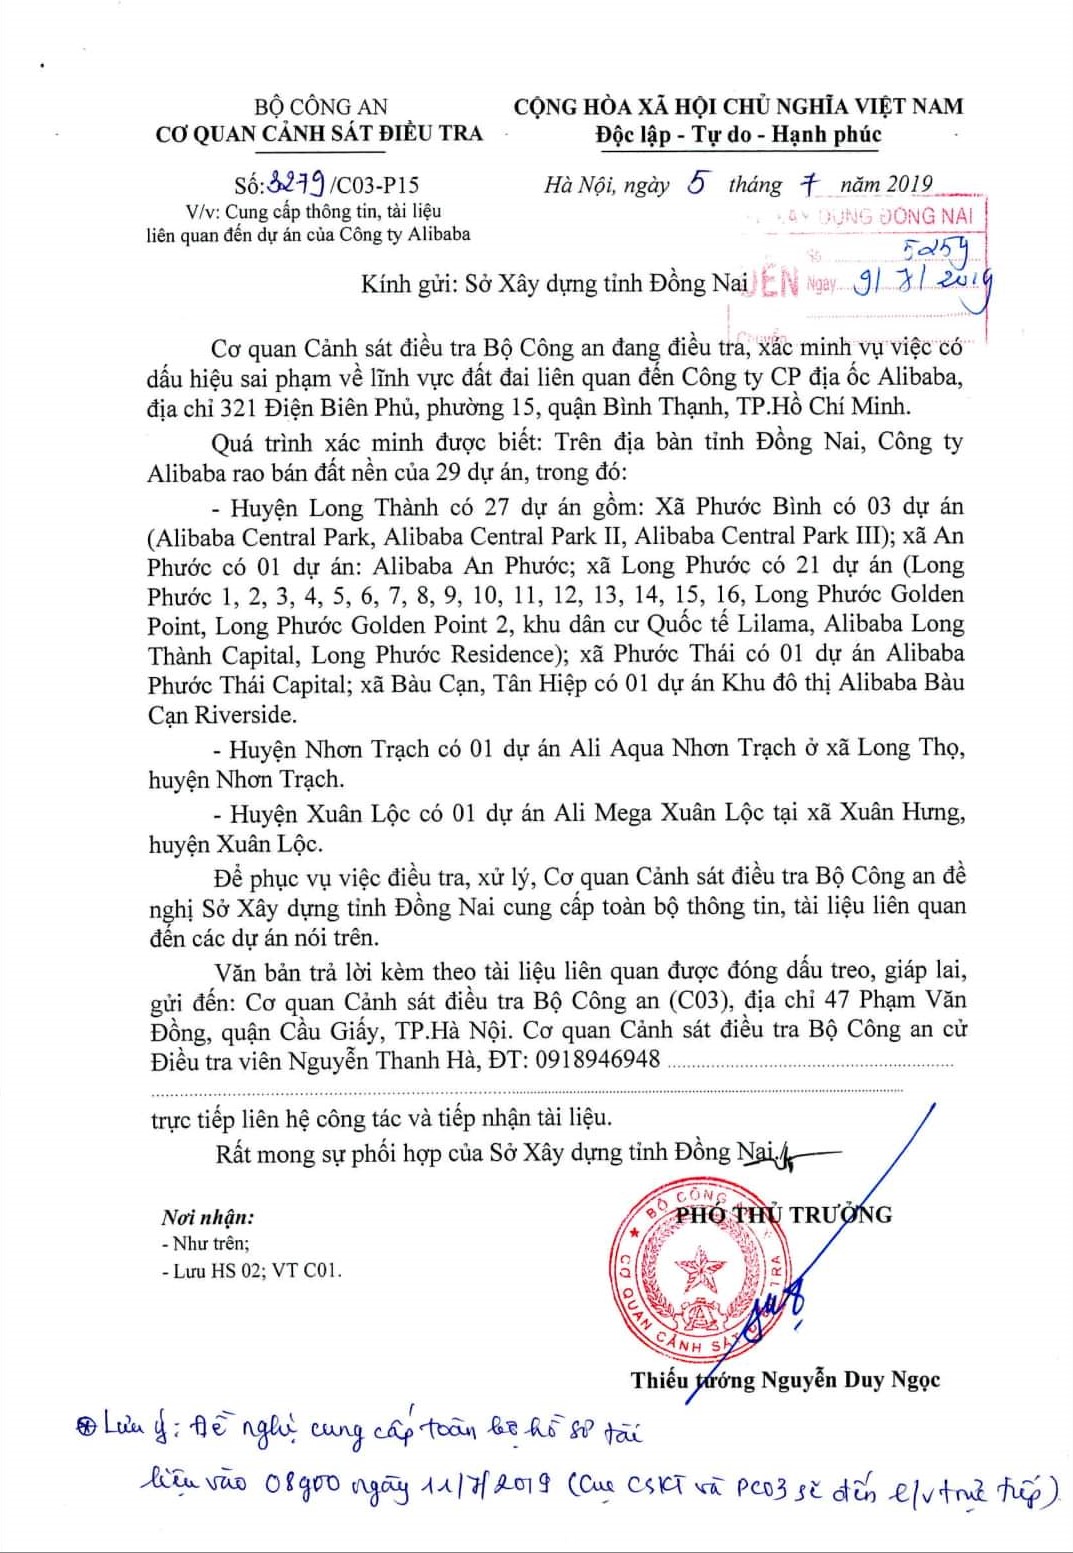 ngày 5/7/2019, Bộ Công an có văn bản số 3279/C03-P15 gửi cho Sở Xây dựng tỉnh Đồng Nai về việc cung cấp toàn bộ thông tin liên quan tới các dự án của Alibaba.